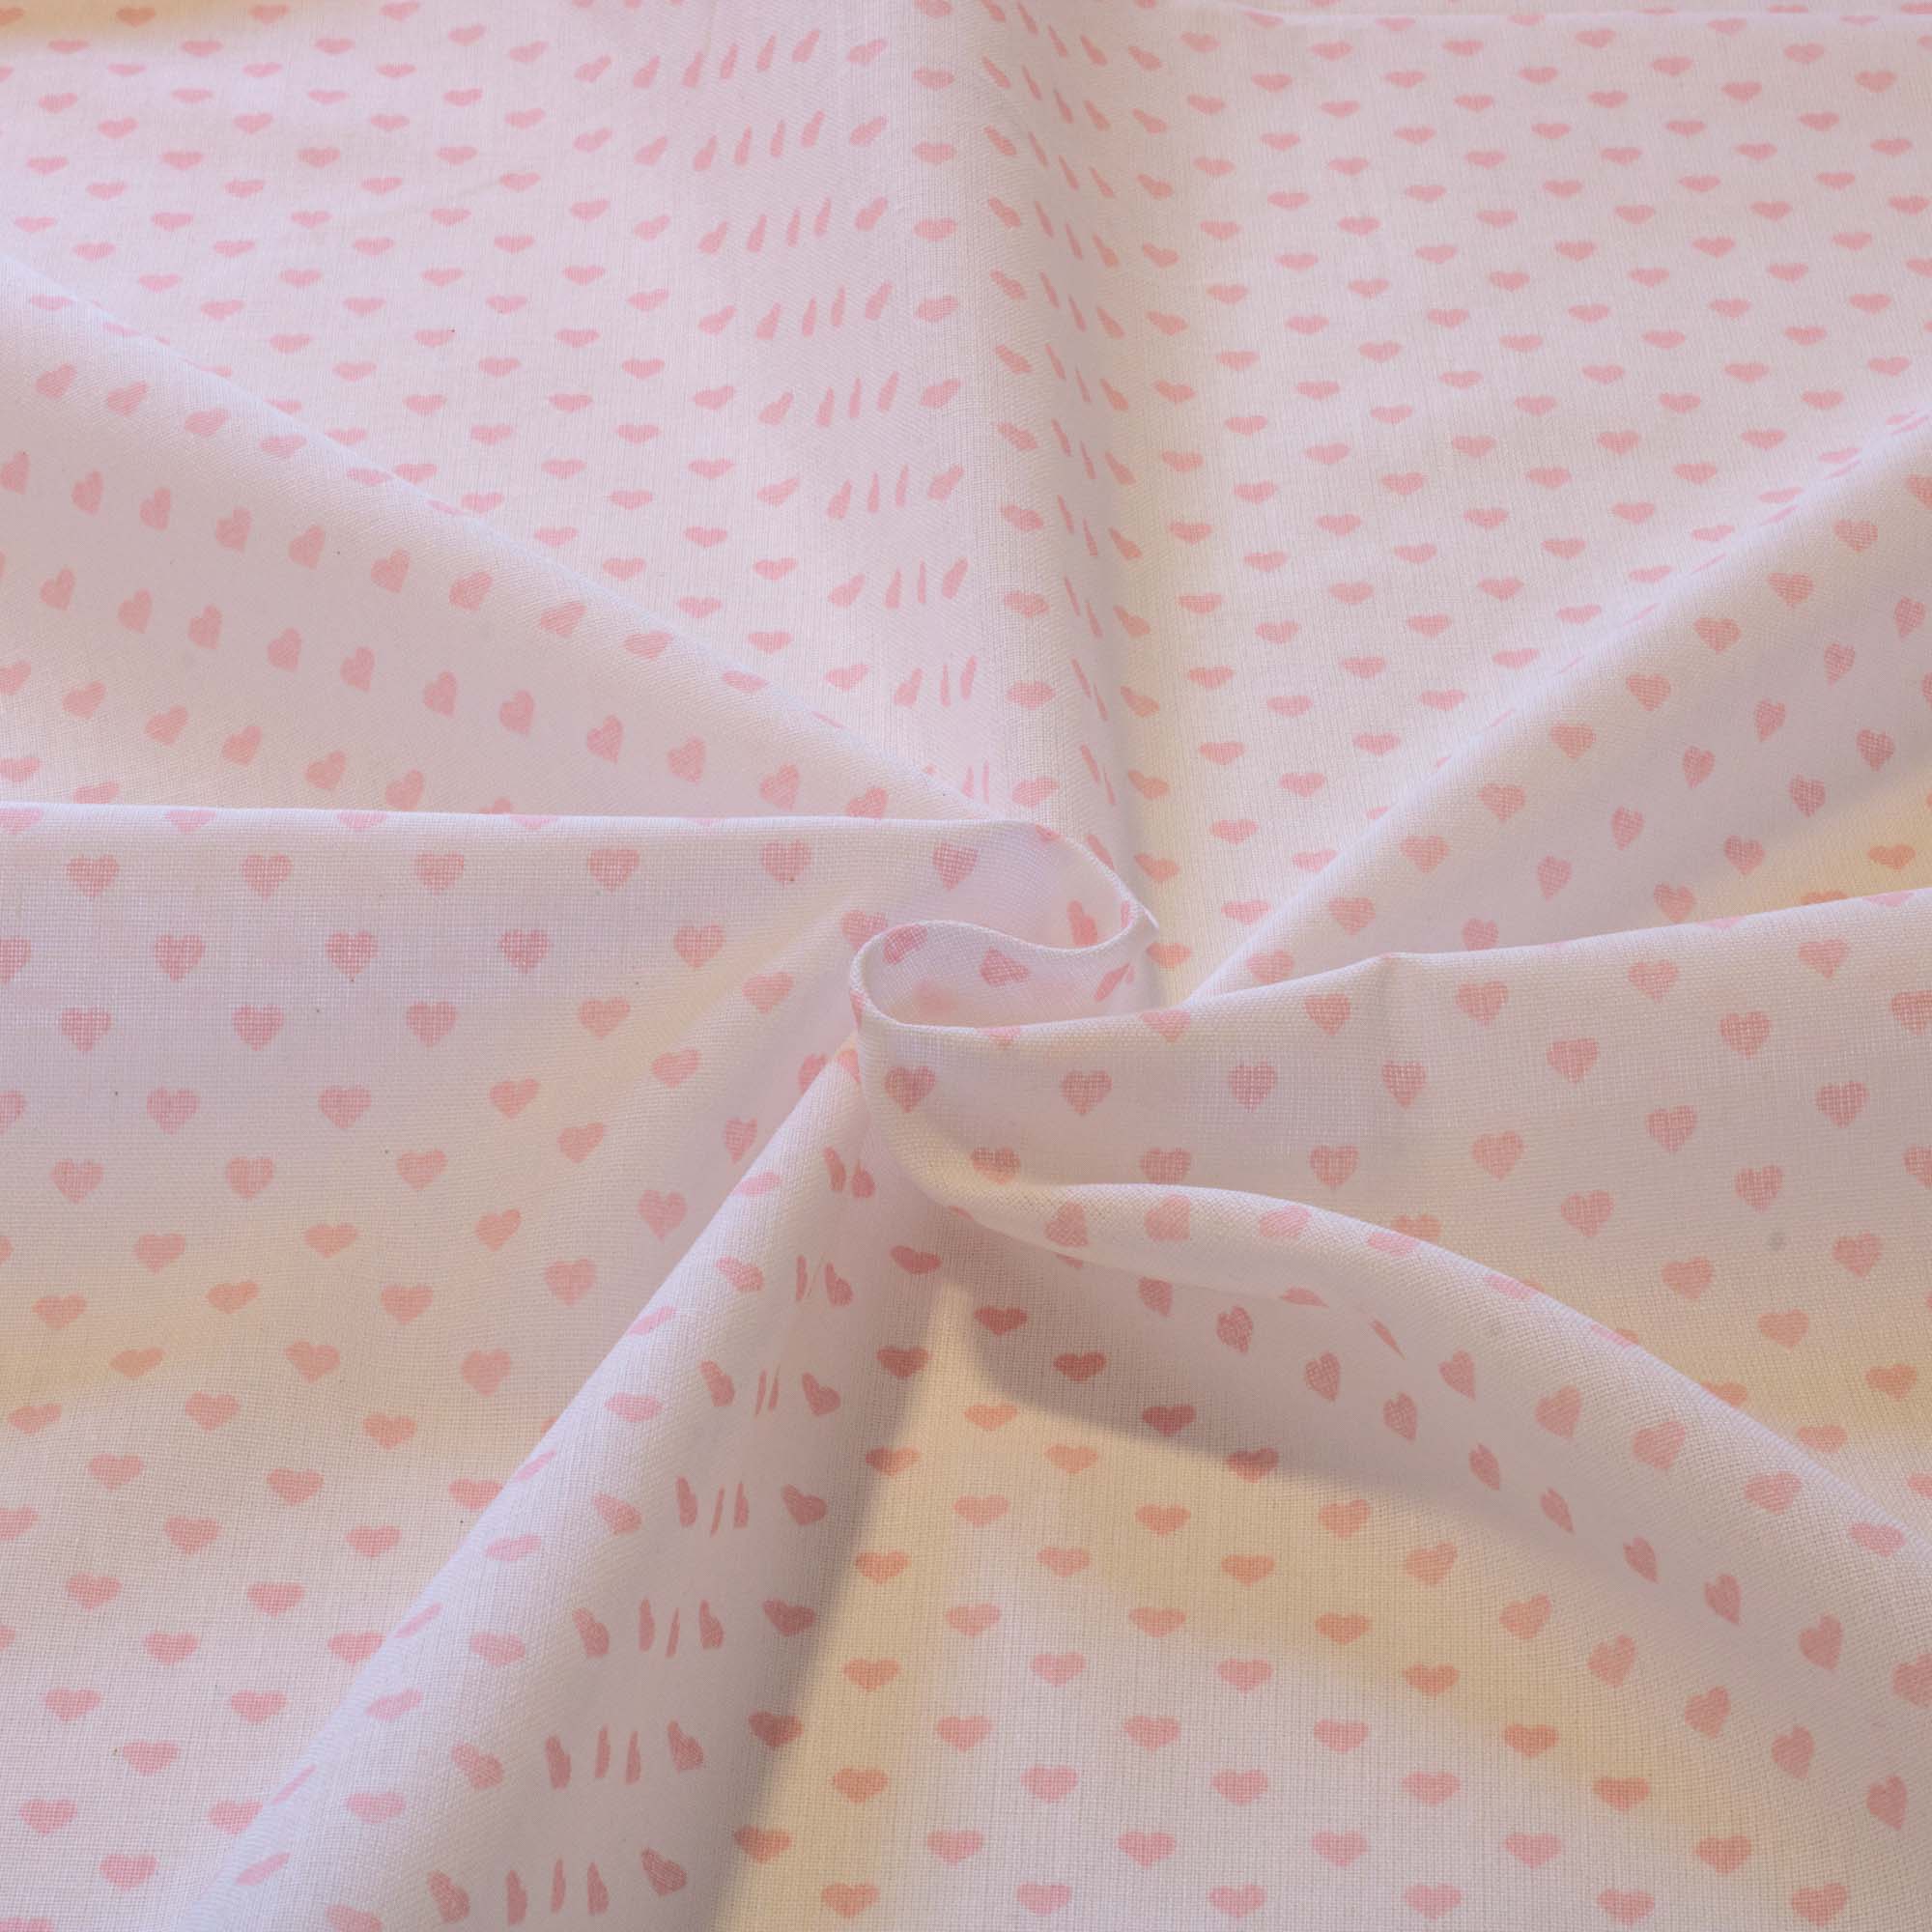 Tecido tricoline estampado coração rosa fundo branco 1,40 m largura